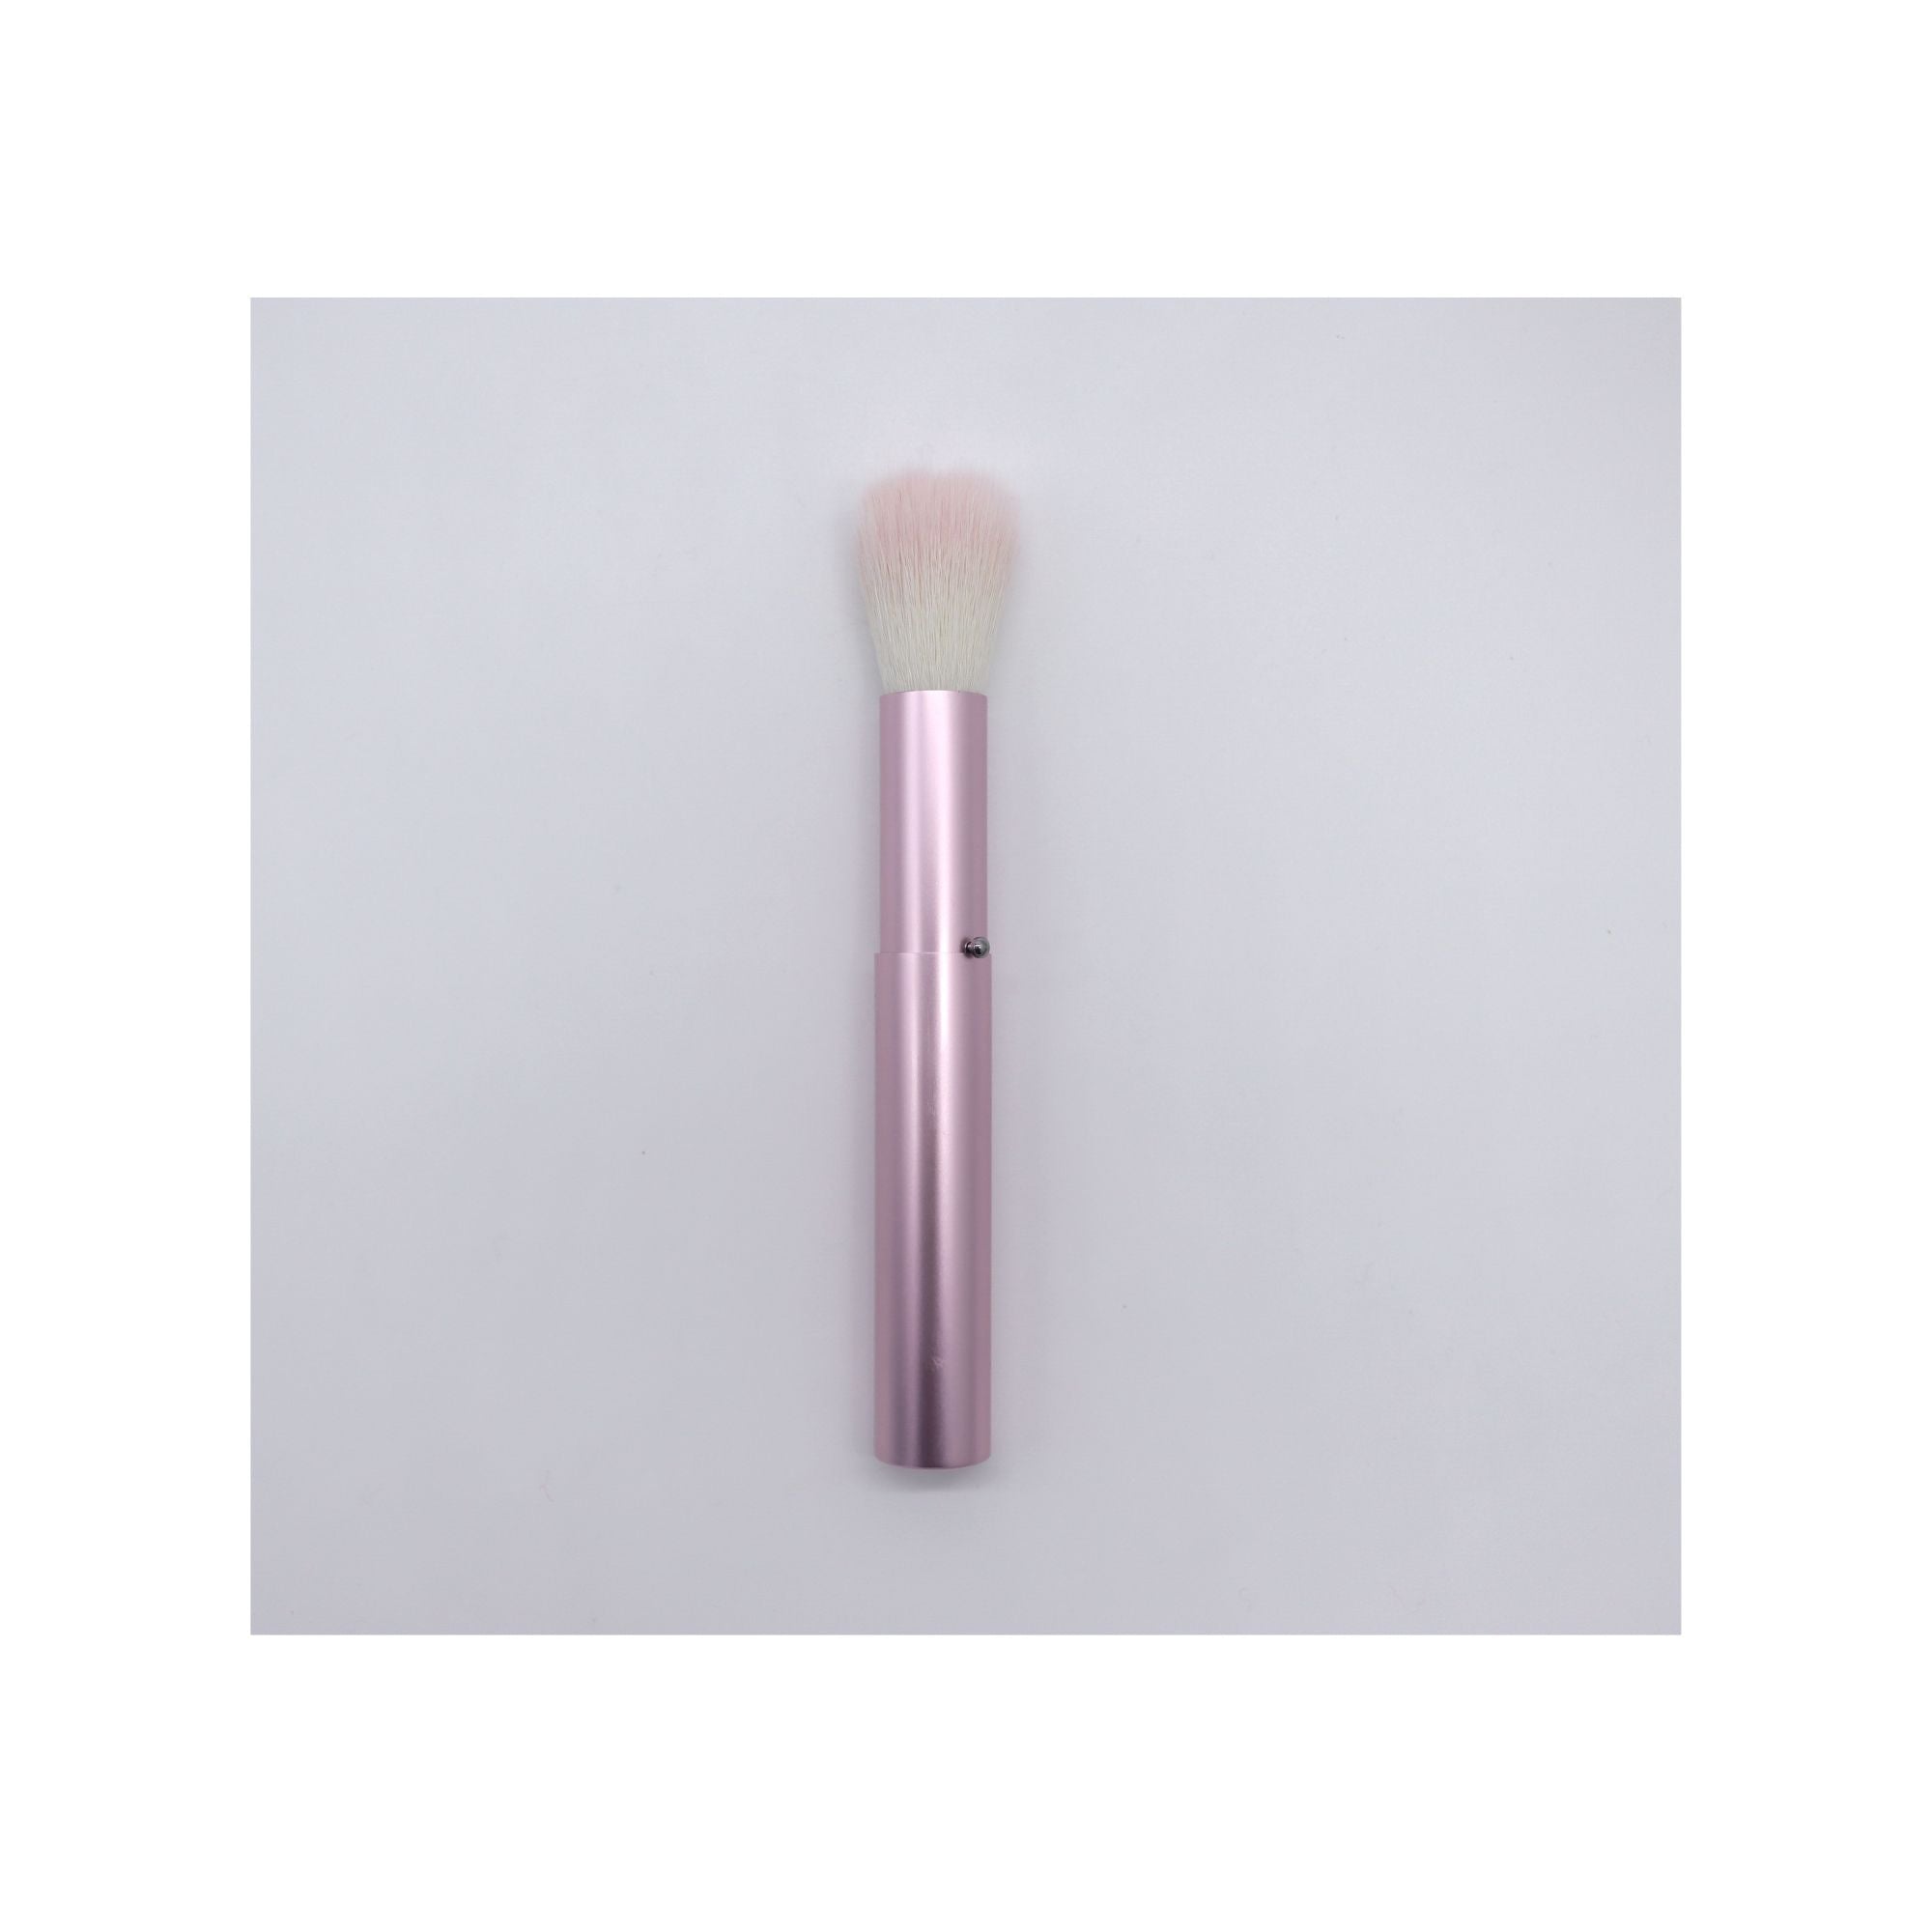 Koyudo Paw-Shaped Portable Cheek Brush (2210-7) - Fude Beauty, Japanese Makeup Brushes